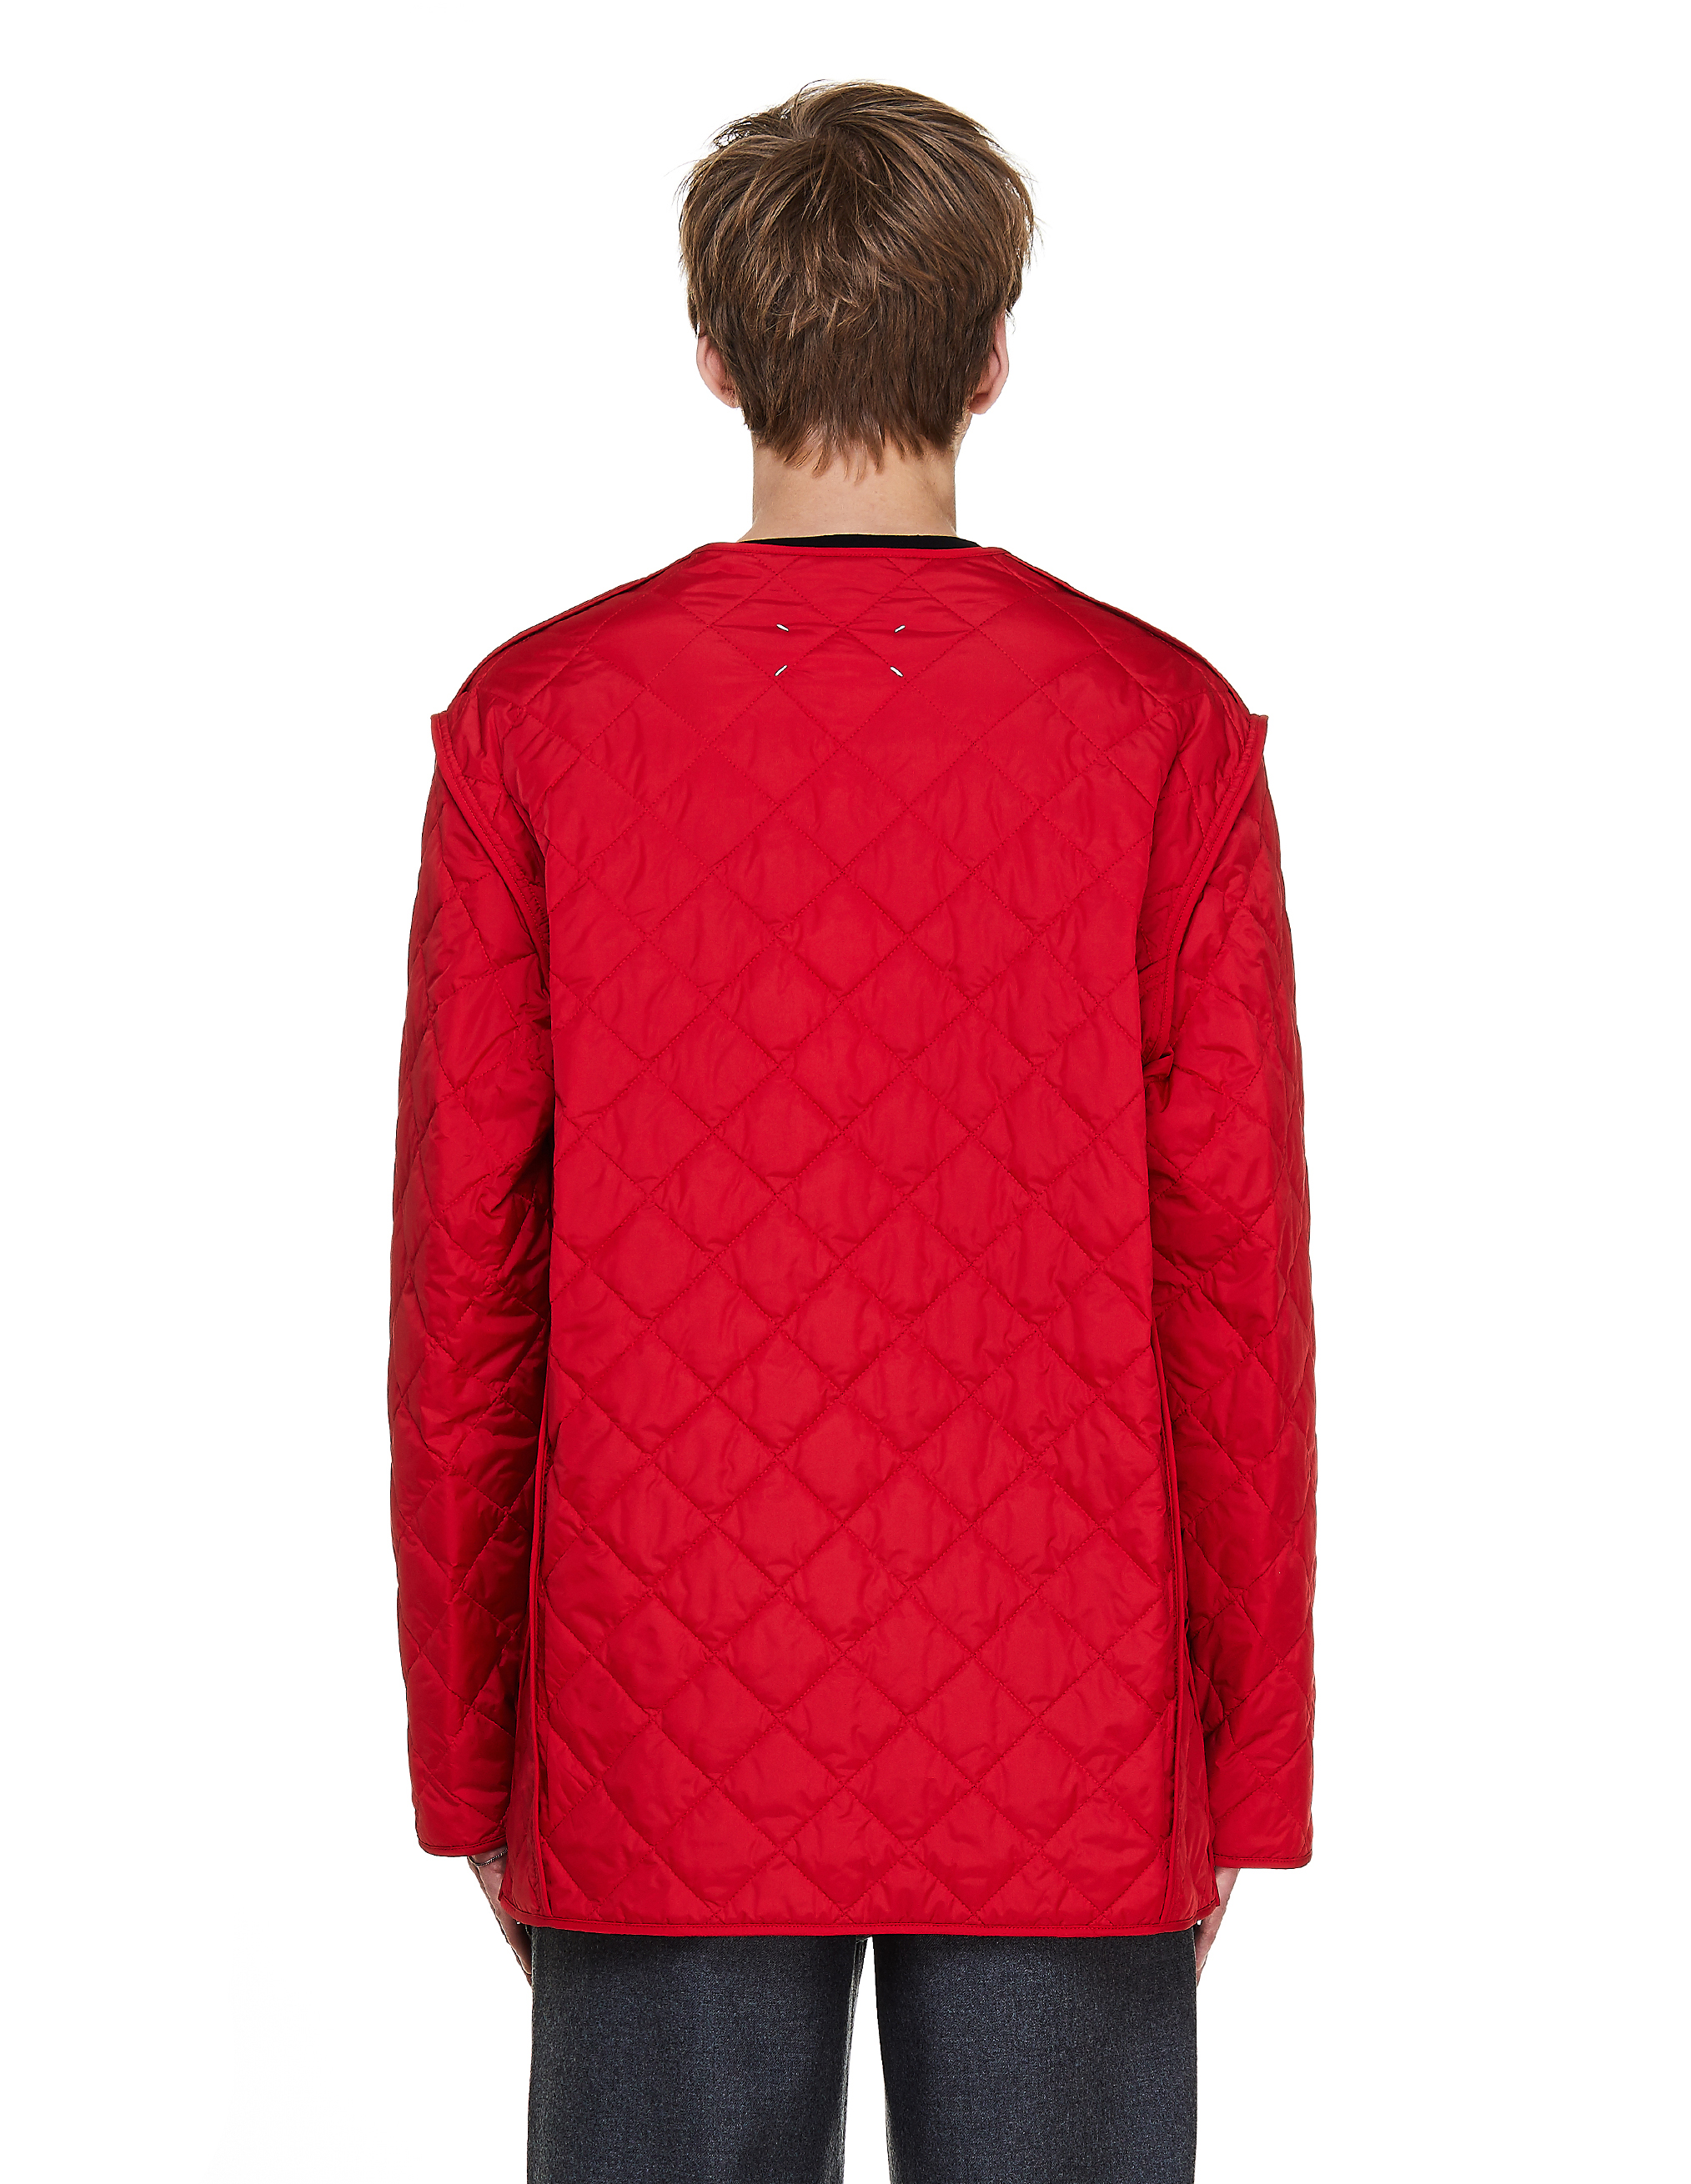 Красная стеганая куртка - Maison Margiela S50AM0467/S53045/314 Фото 3